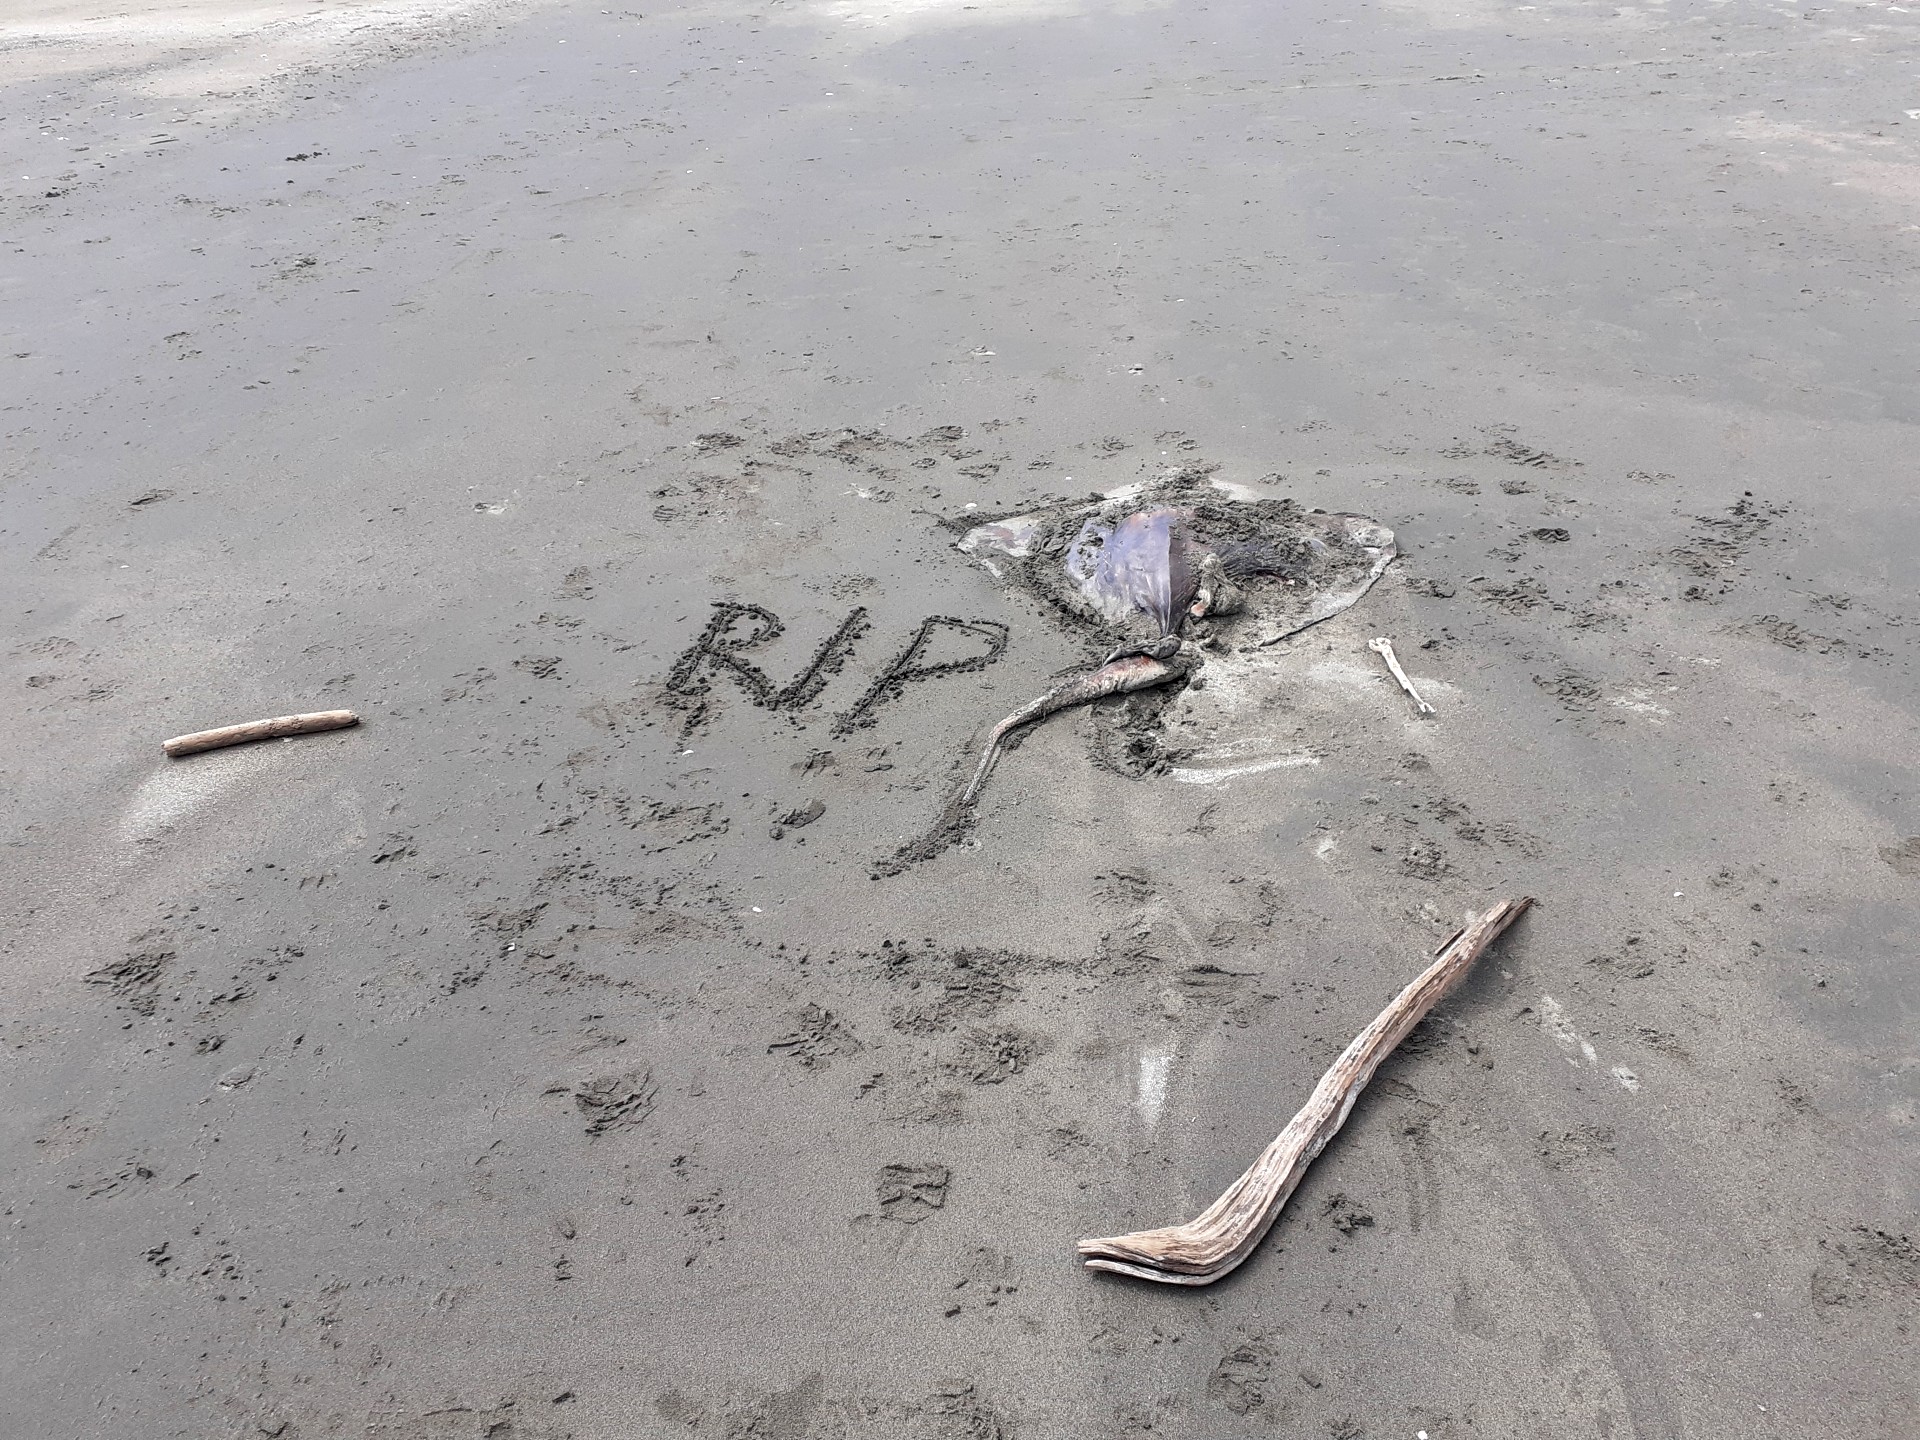  dead ray on a beach, RIP